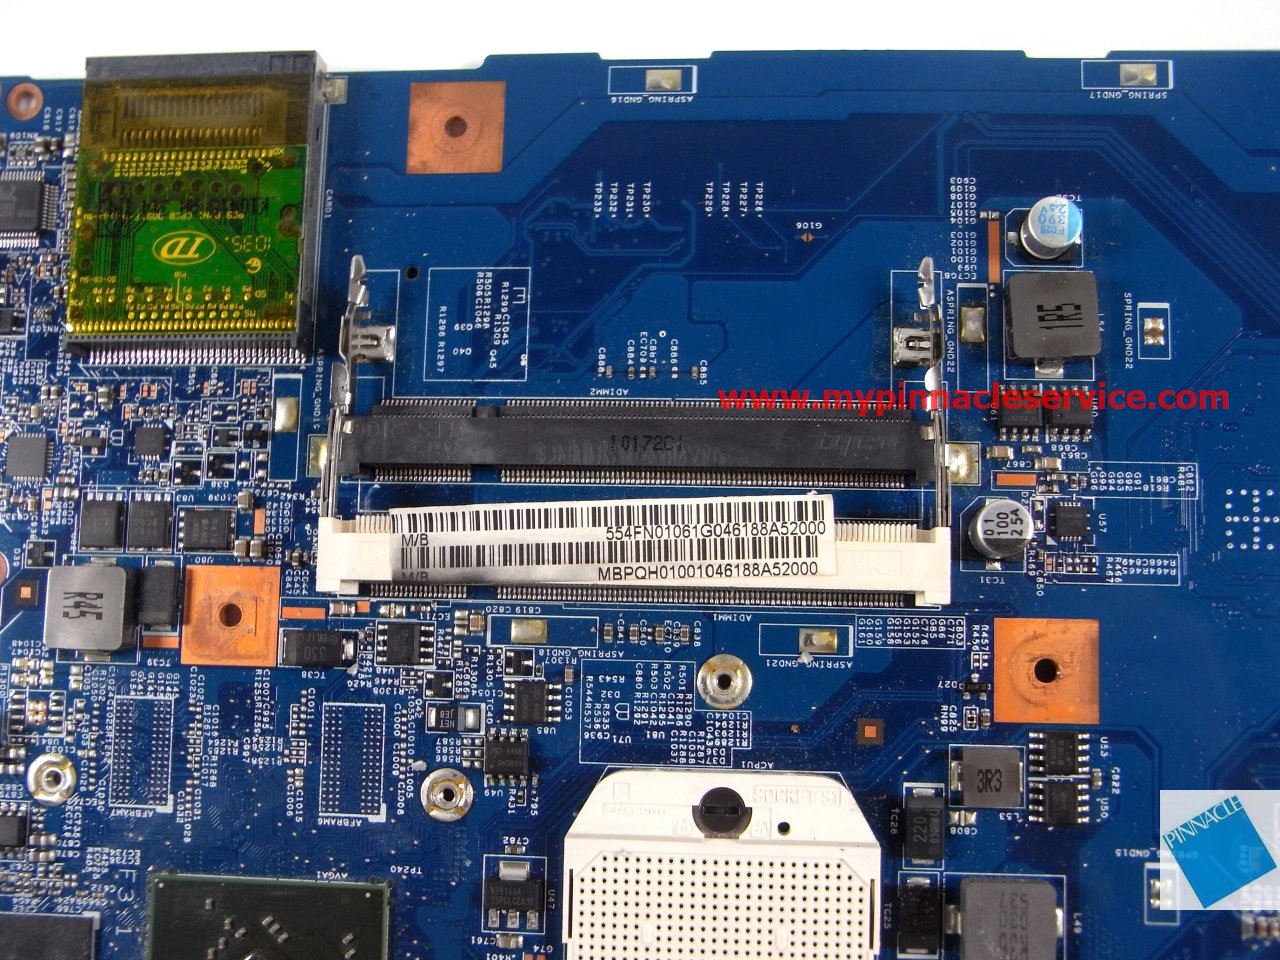 motherboard-for-acer-aspire-5542-5542g-48.4fn02.011-rimg0036-mbpqh01001.jpg